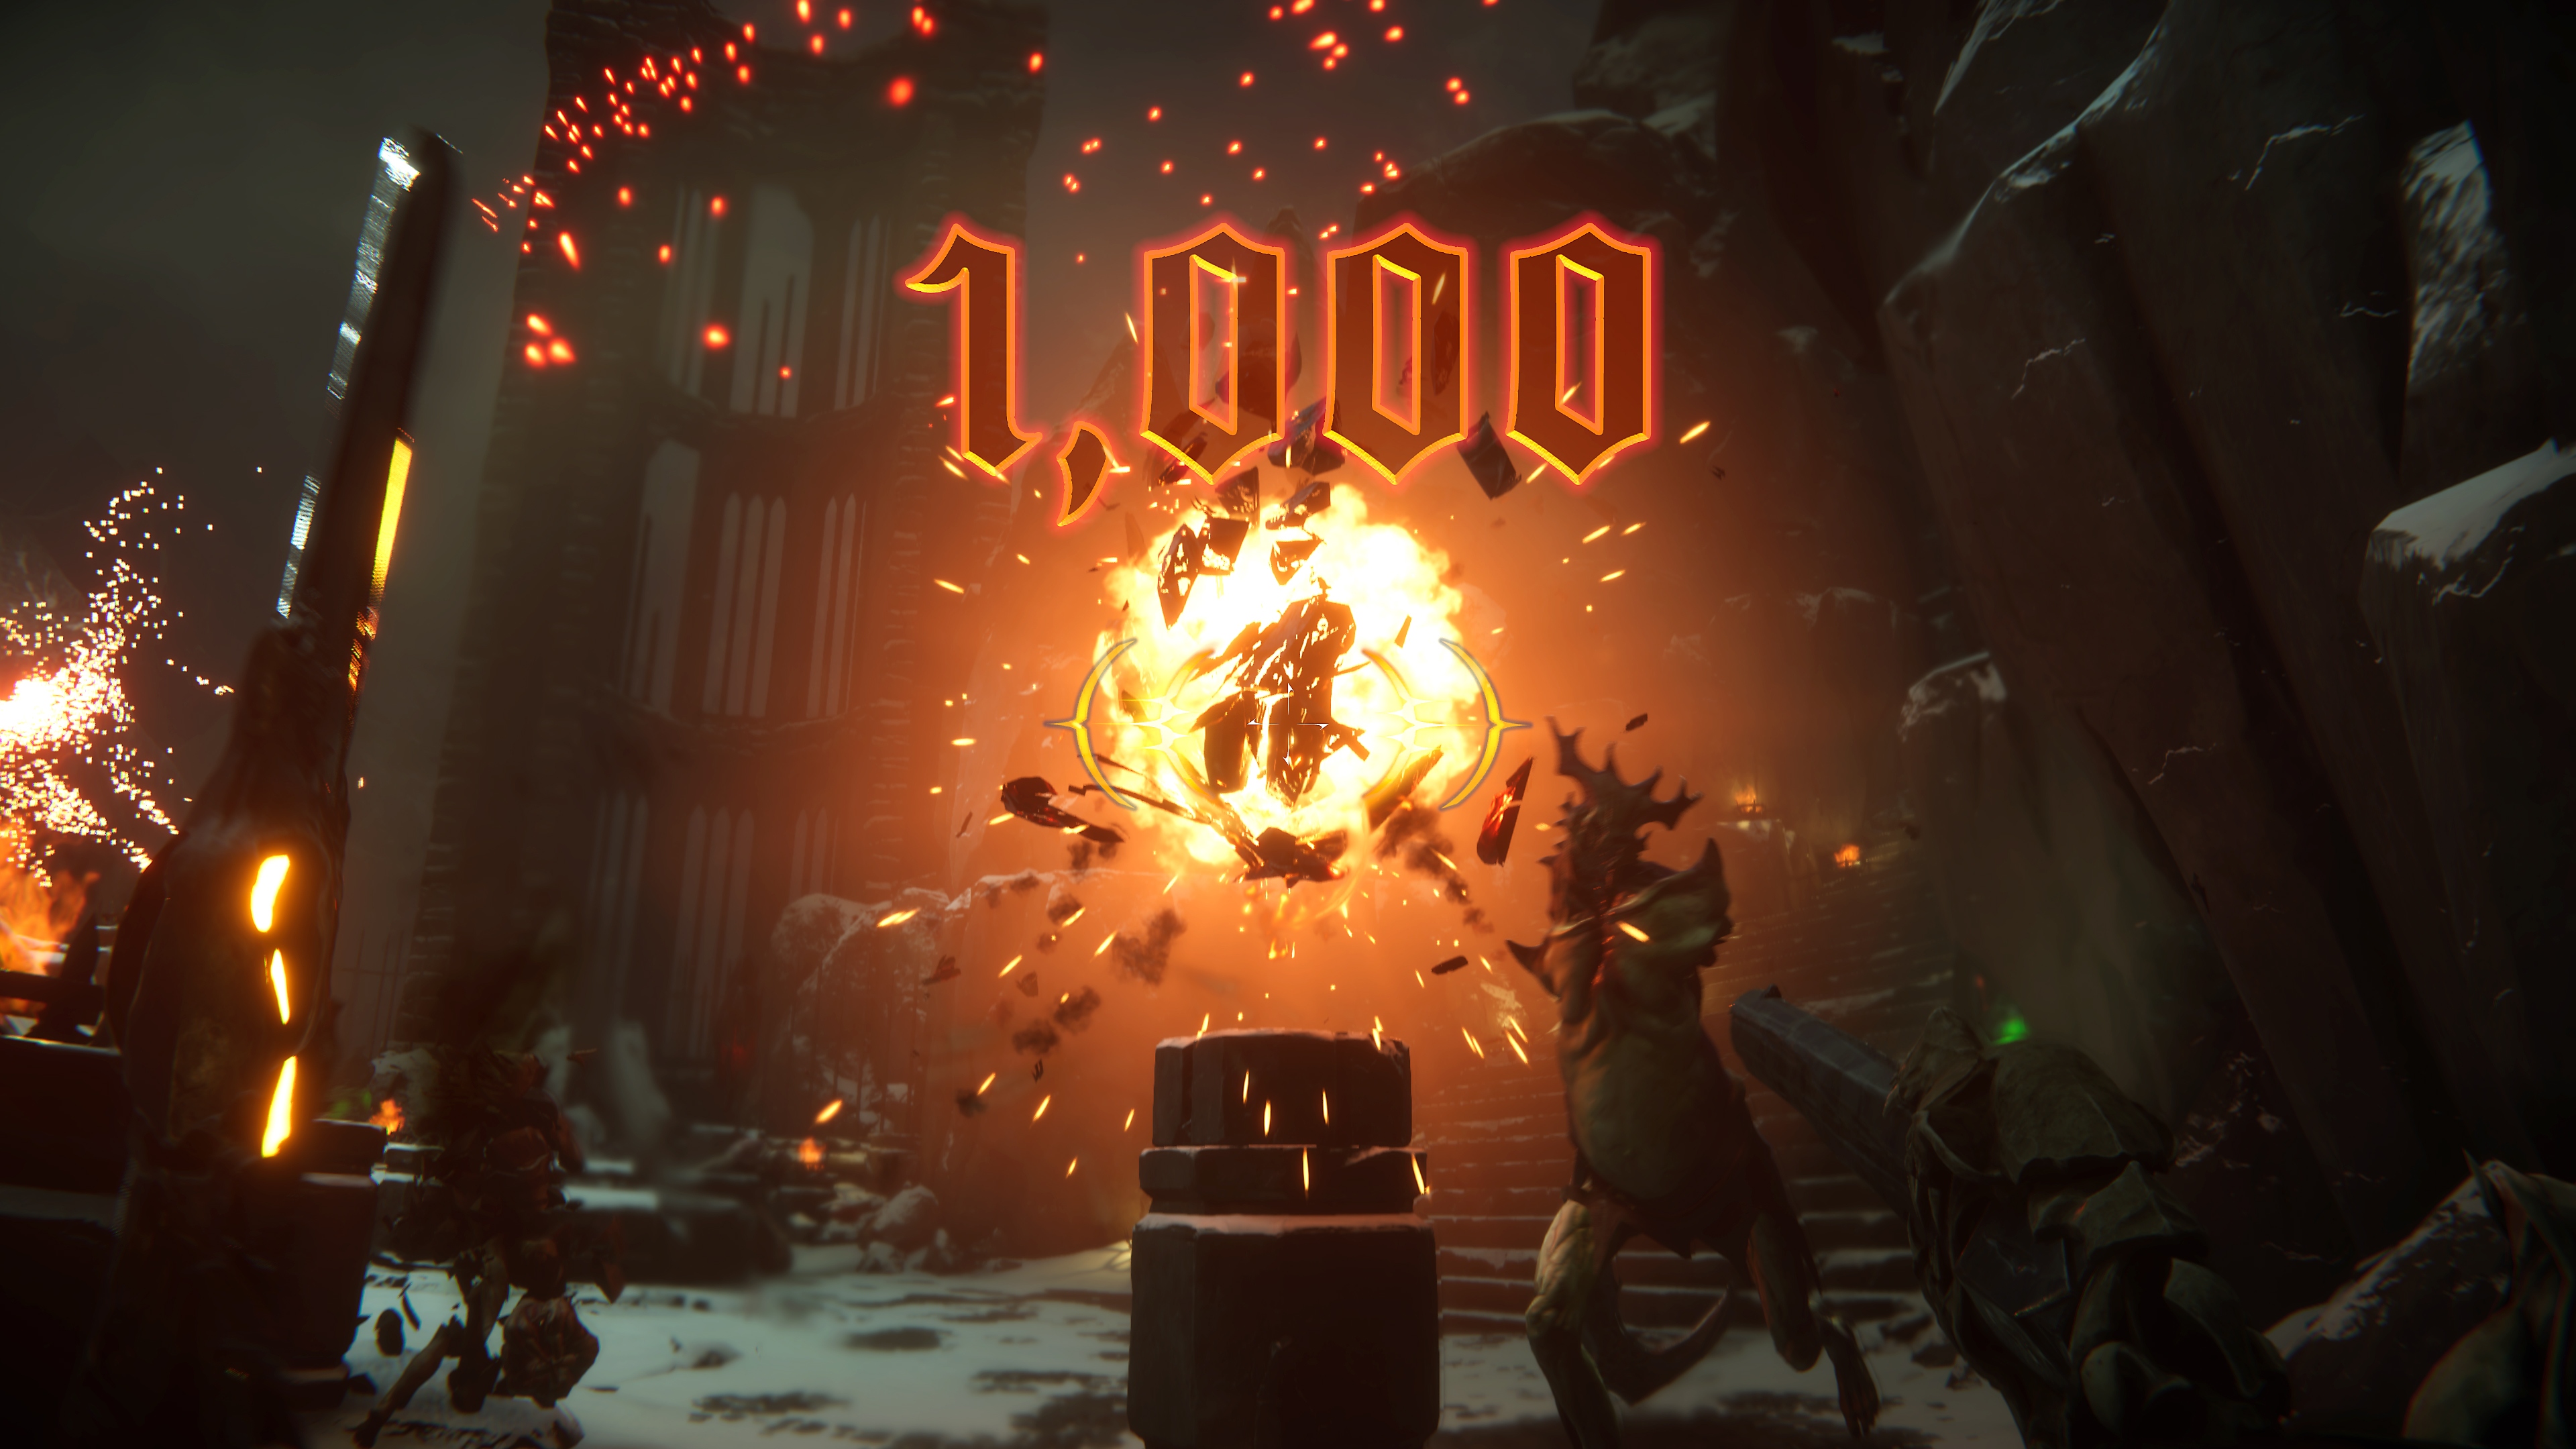 《Metal: Hellsinger》截屏，展示了一次屏幕中心的大爆炸，屏幕显示得分“1000”分。